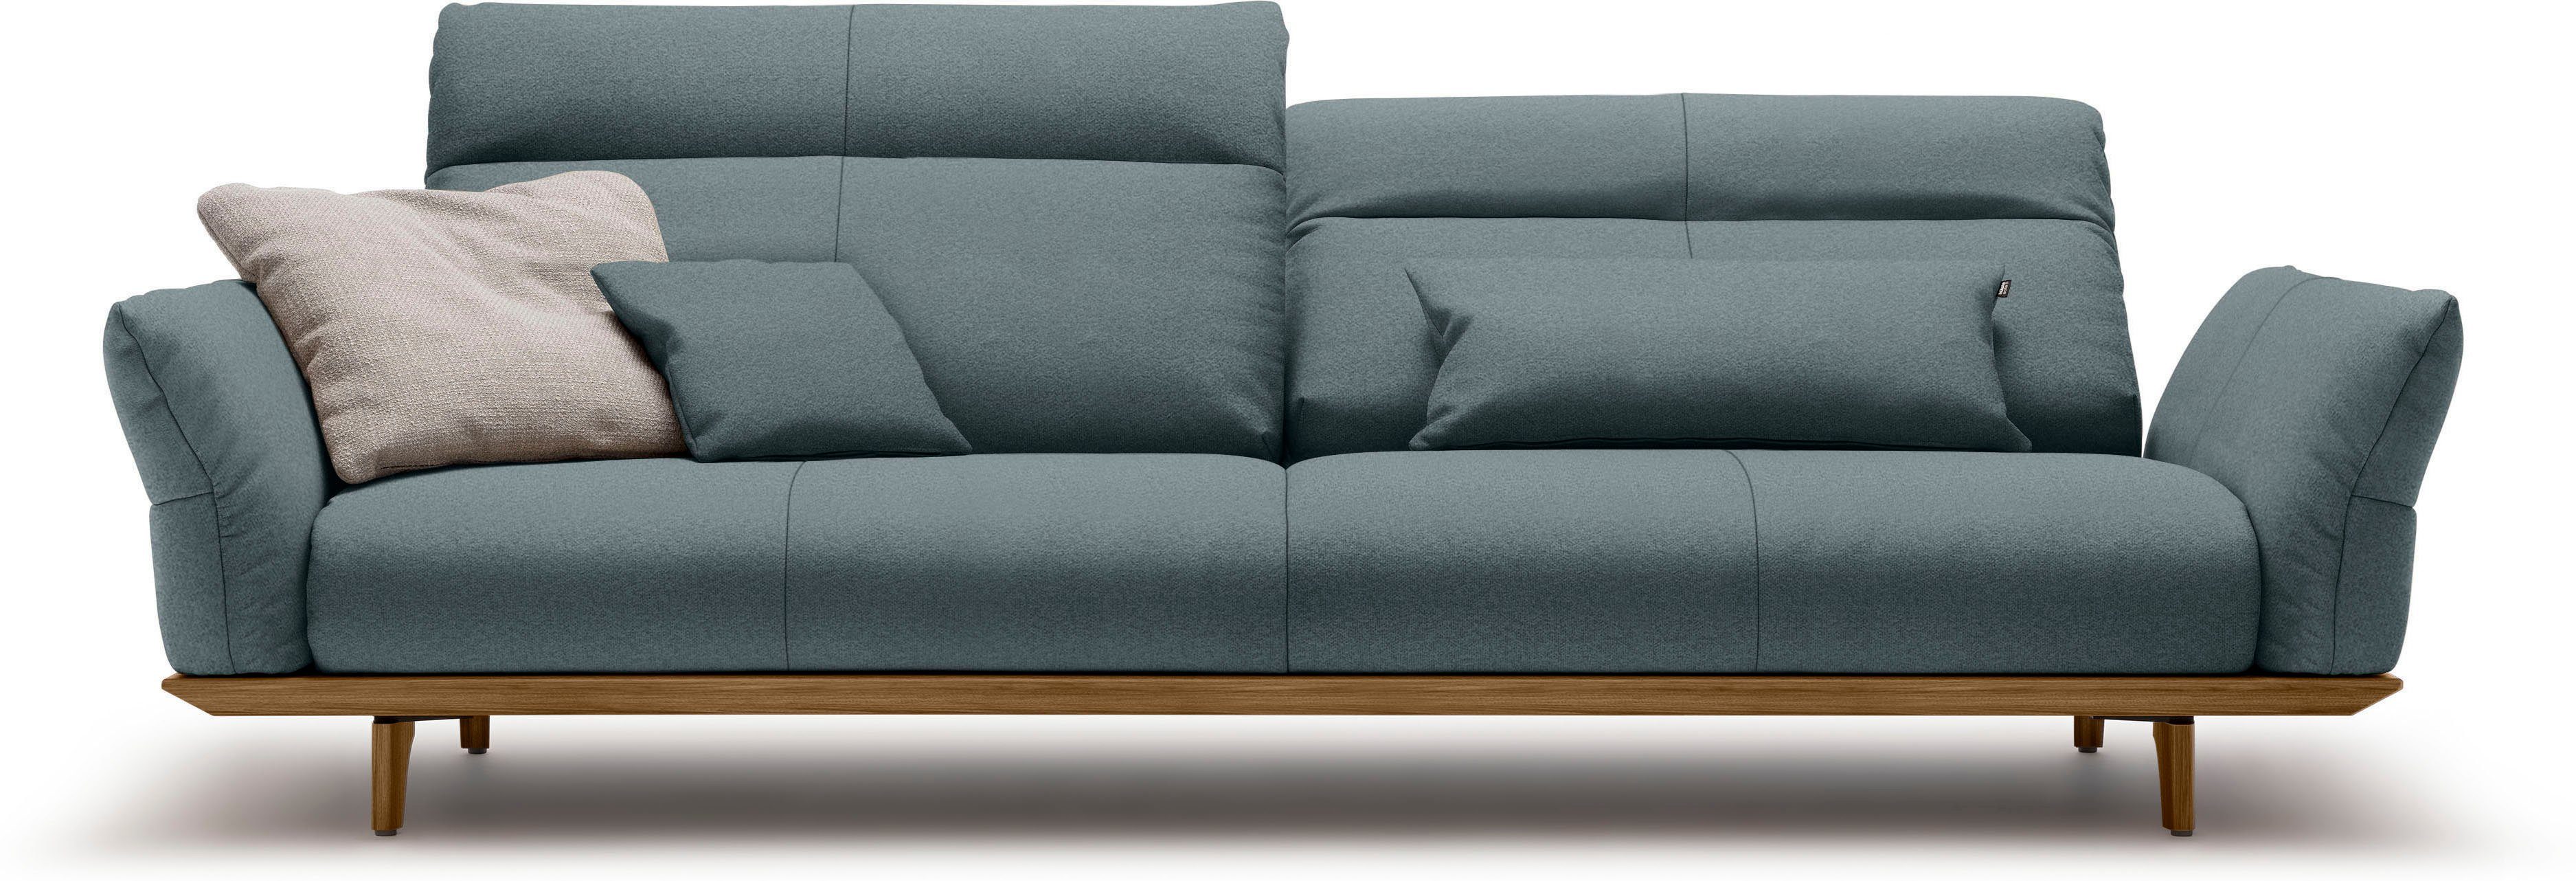 sofa Nussbaum, Füße in 4-Sitzer cm 248 Nussbaum, Sockel hs.460, Breite hülsta